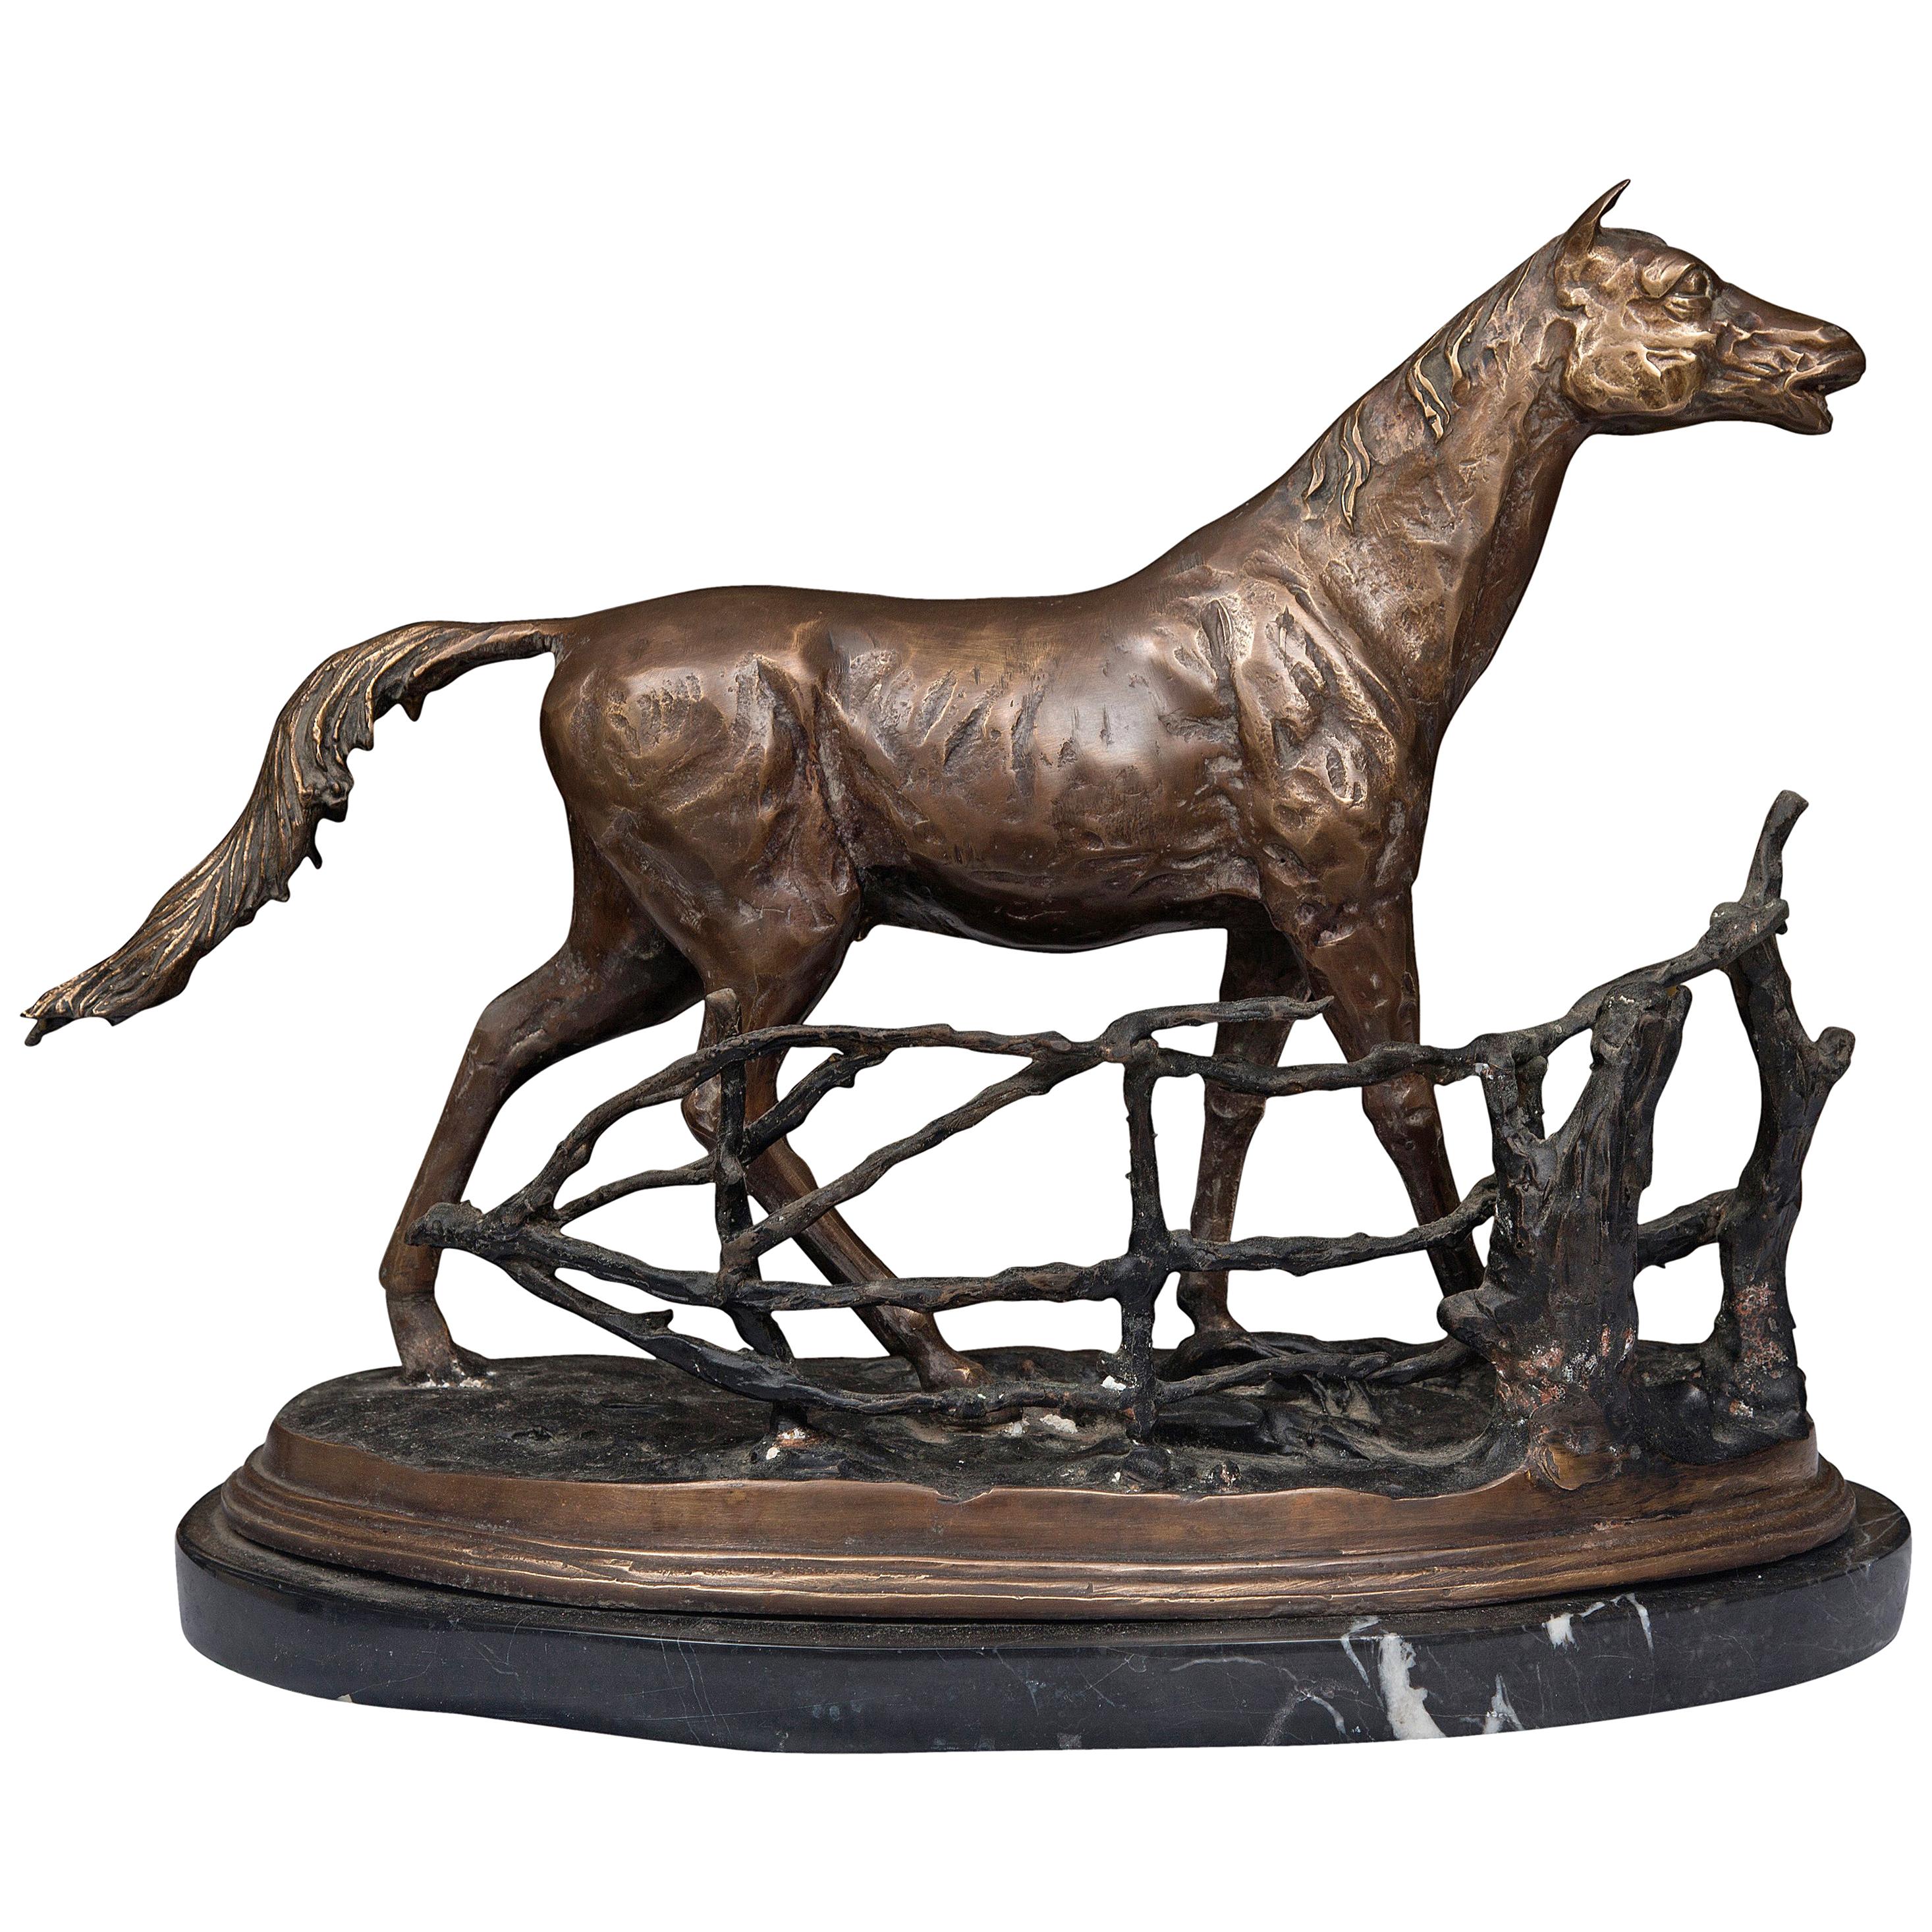 Statue eines patinierten Bronzemodells eines Pferdes auf Marmorsockel